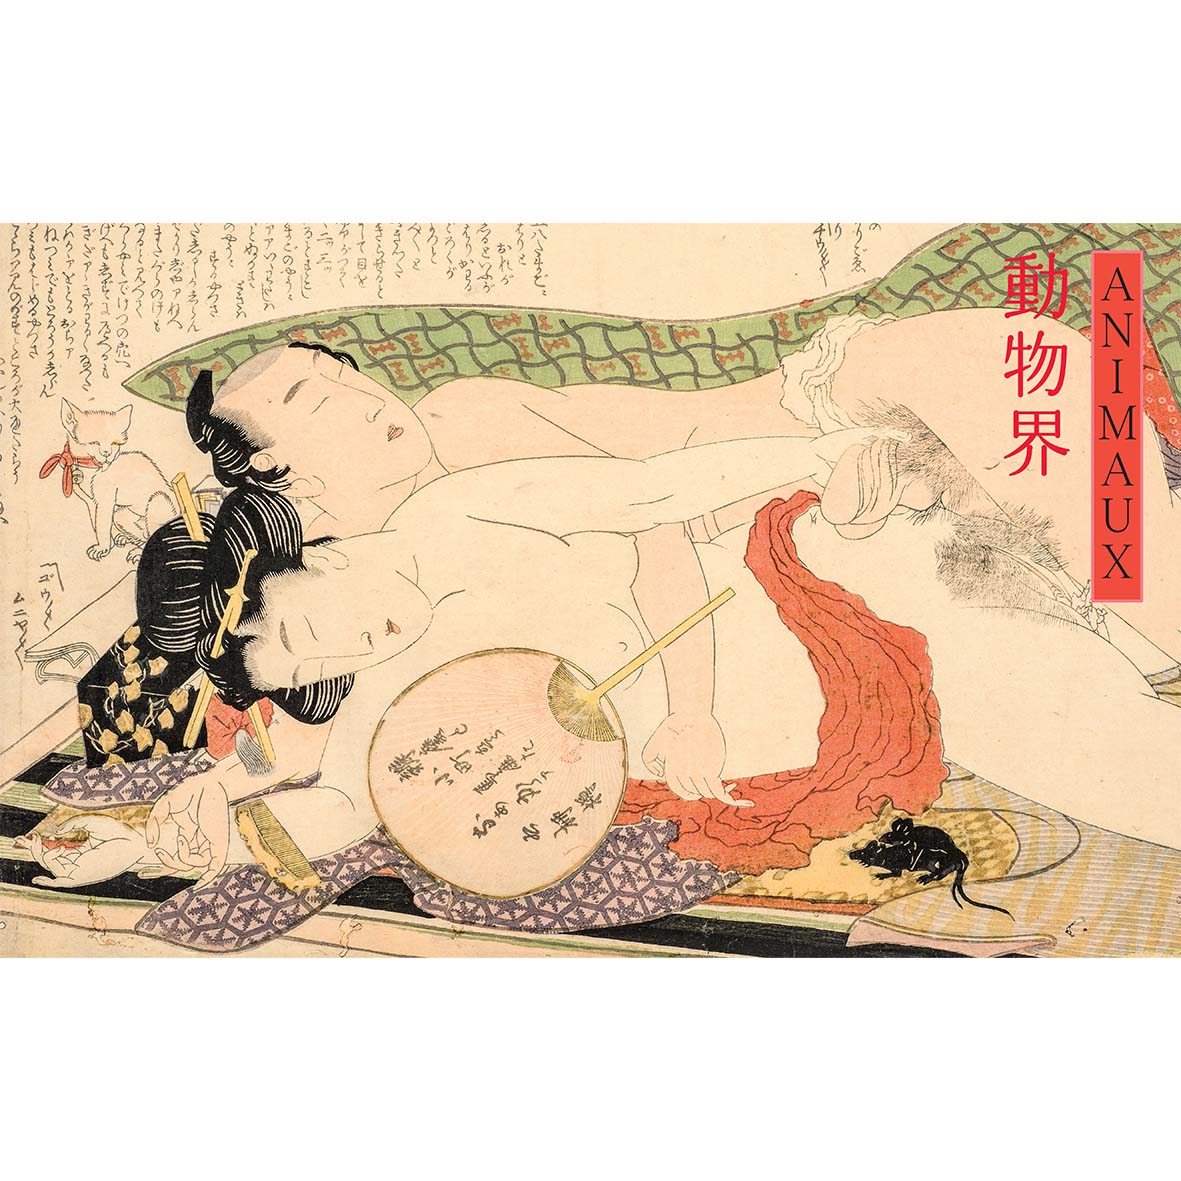 Shunga - Images du désir dans l'art érotique du Japon d'hier et d'aujourd'hui